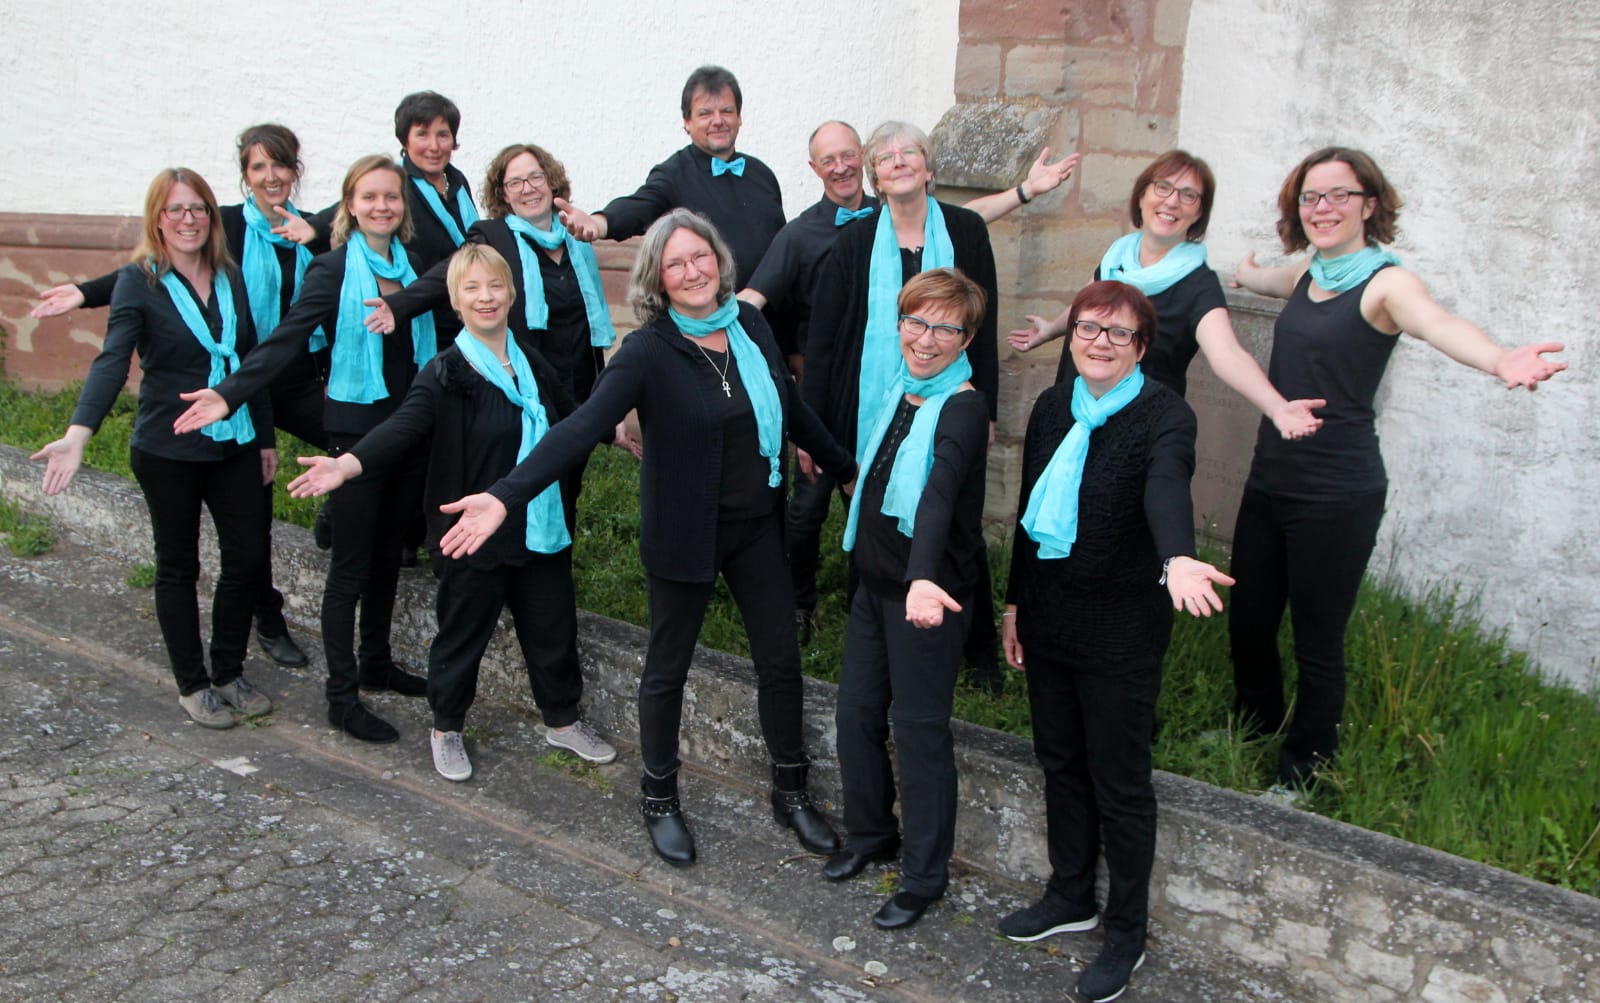 Singen Sie mit uns im Chor Sankt-Martin-Singers e.V.in Medelsheim!